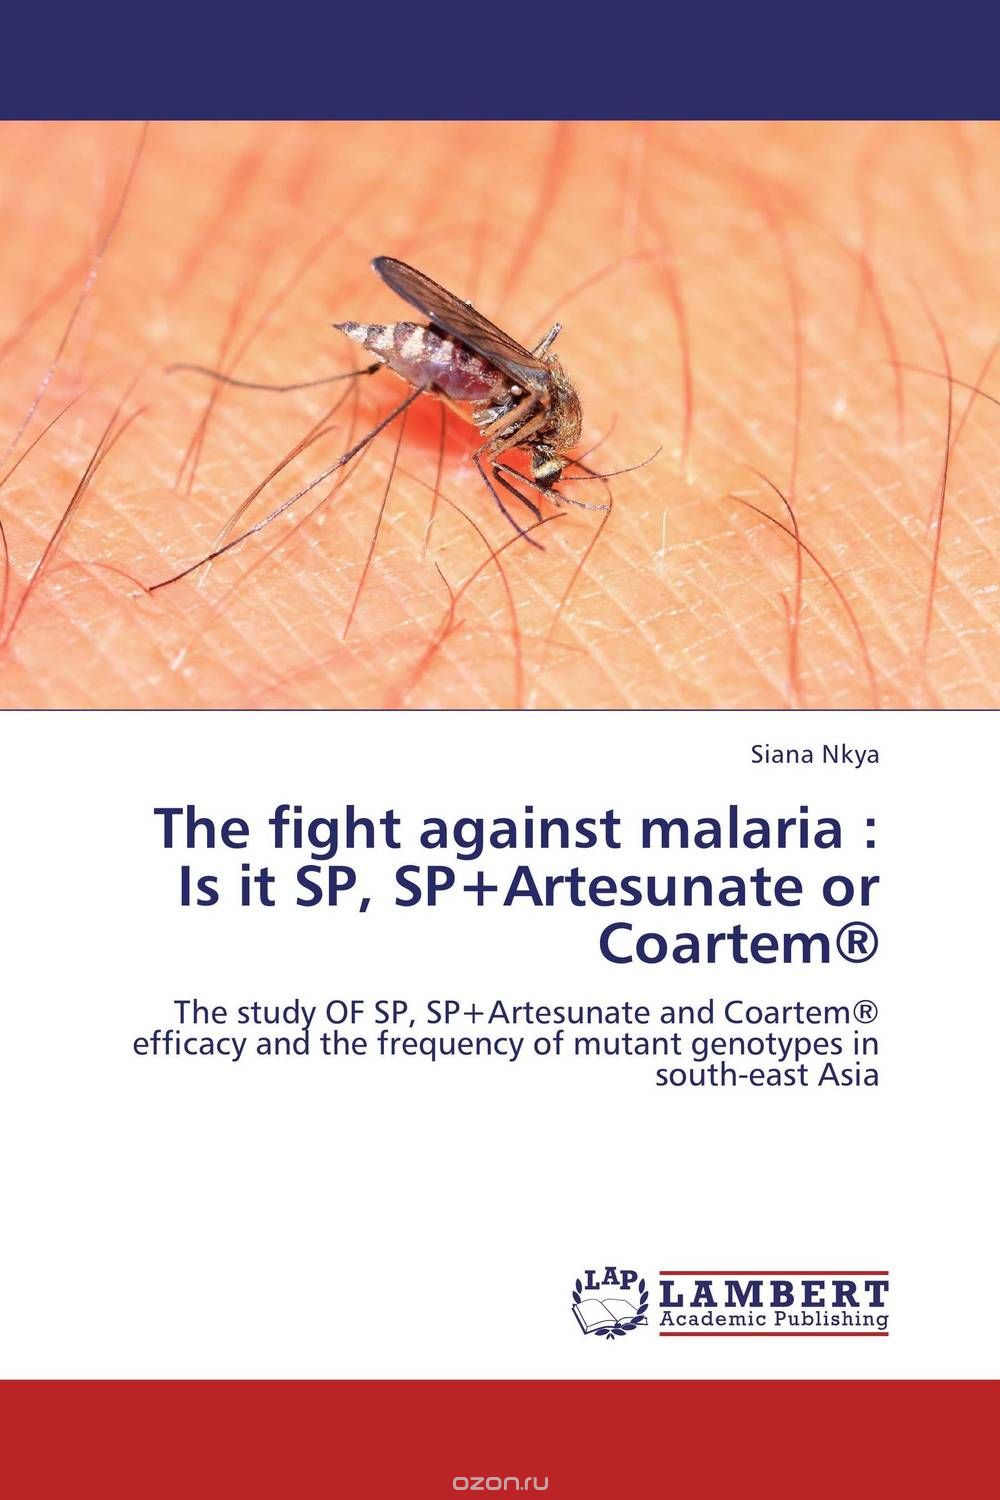 Скачать книгу "The fight against malaria : Is it SP, SP+Artesunate or Coartem®"